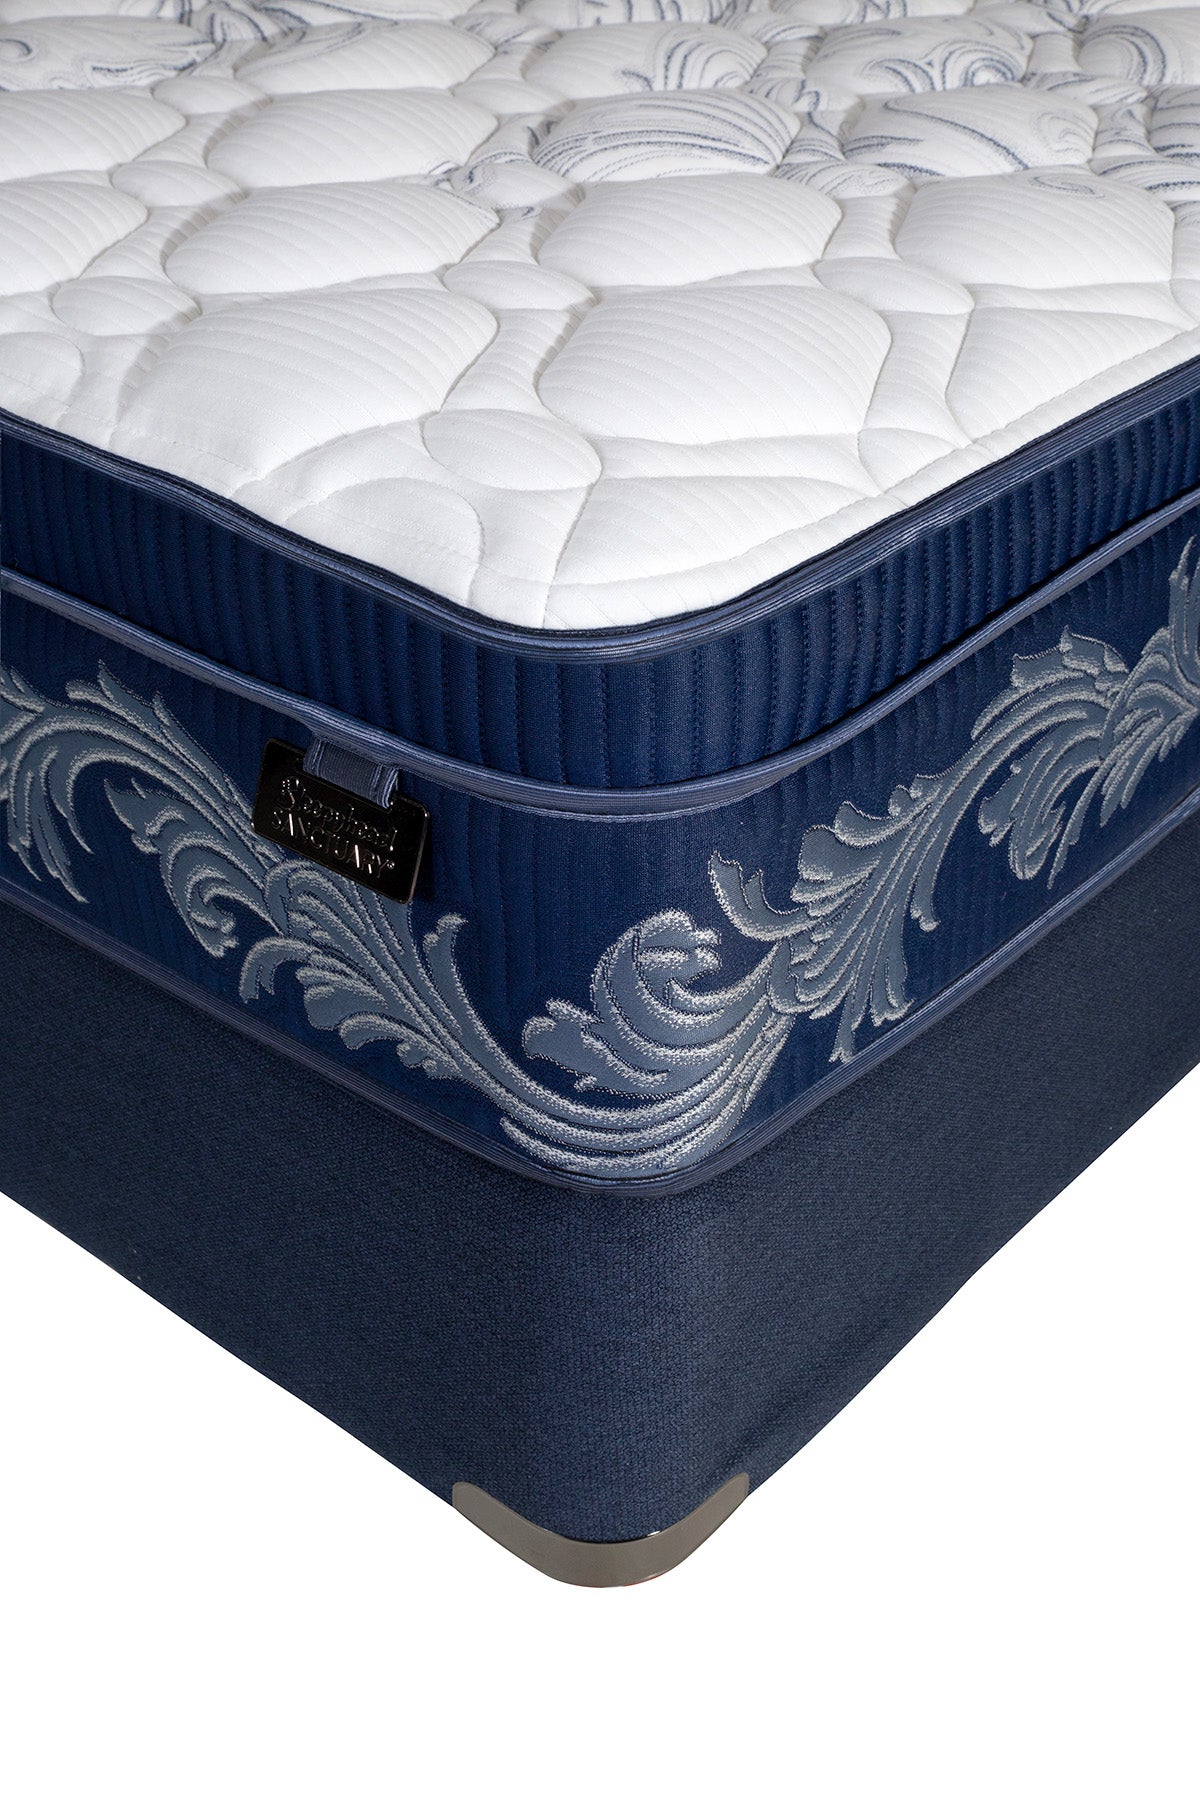 midnight5-cali-king-mattress-2